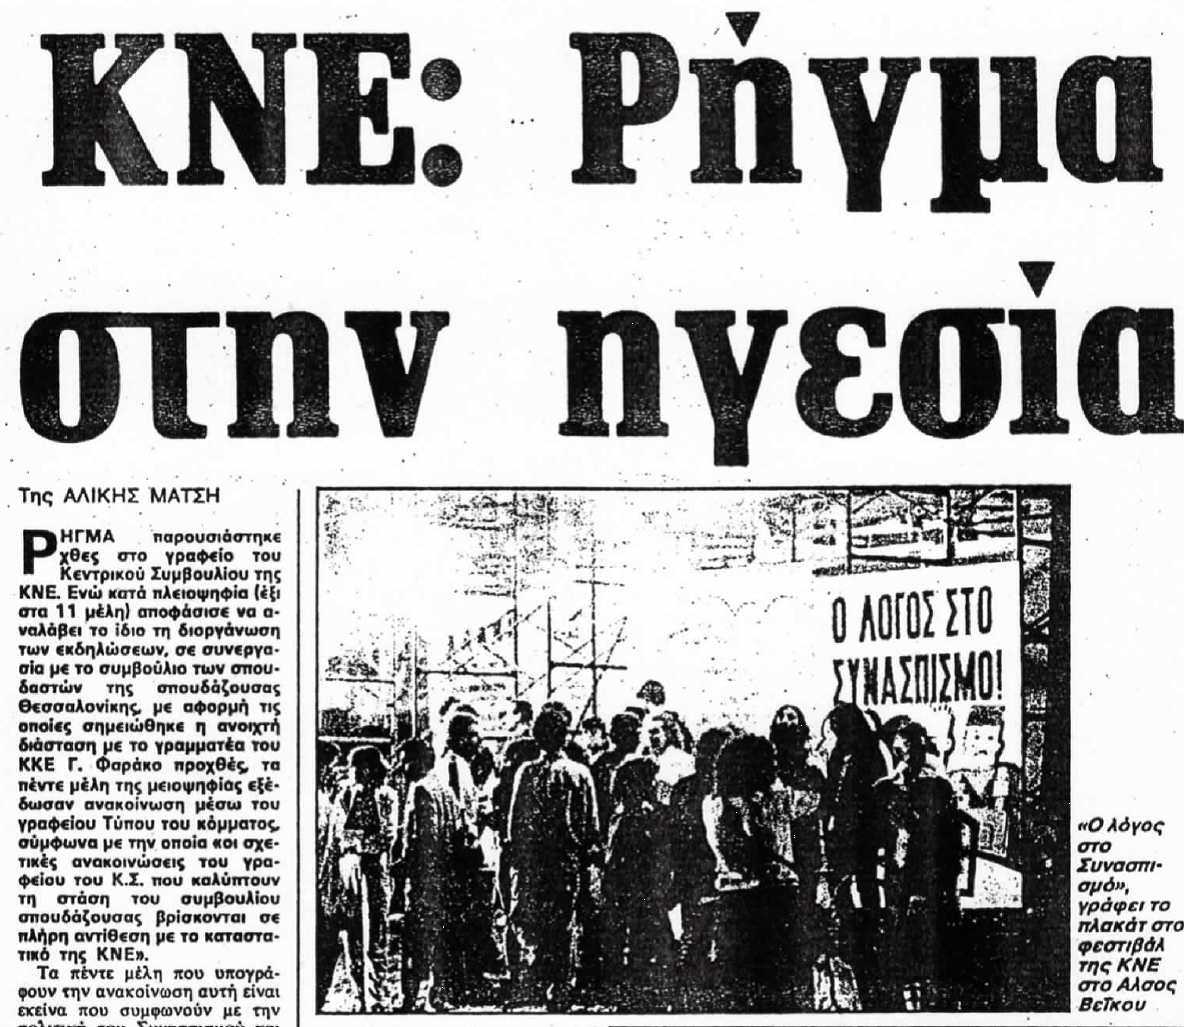 Στα ρεπορτάζ της "Ελευθεροτυπίας" το σαββατοκύριακο 16-17 Σεπτέμβρη 1989 η εφημερίδα είναι άμεσα ενημερωμένη από το γραφείο τύπου του κόμματος, δηλαδή όπως διευκρινίζεται, από το ΠΓ της ΚΕ του ΚΚΕ: πρόκειται για διαφωνούντες για τους οποίους θα παρθούν άμεσα μέτρα